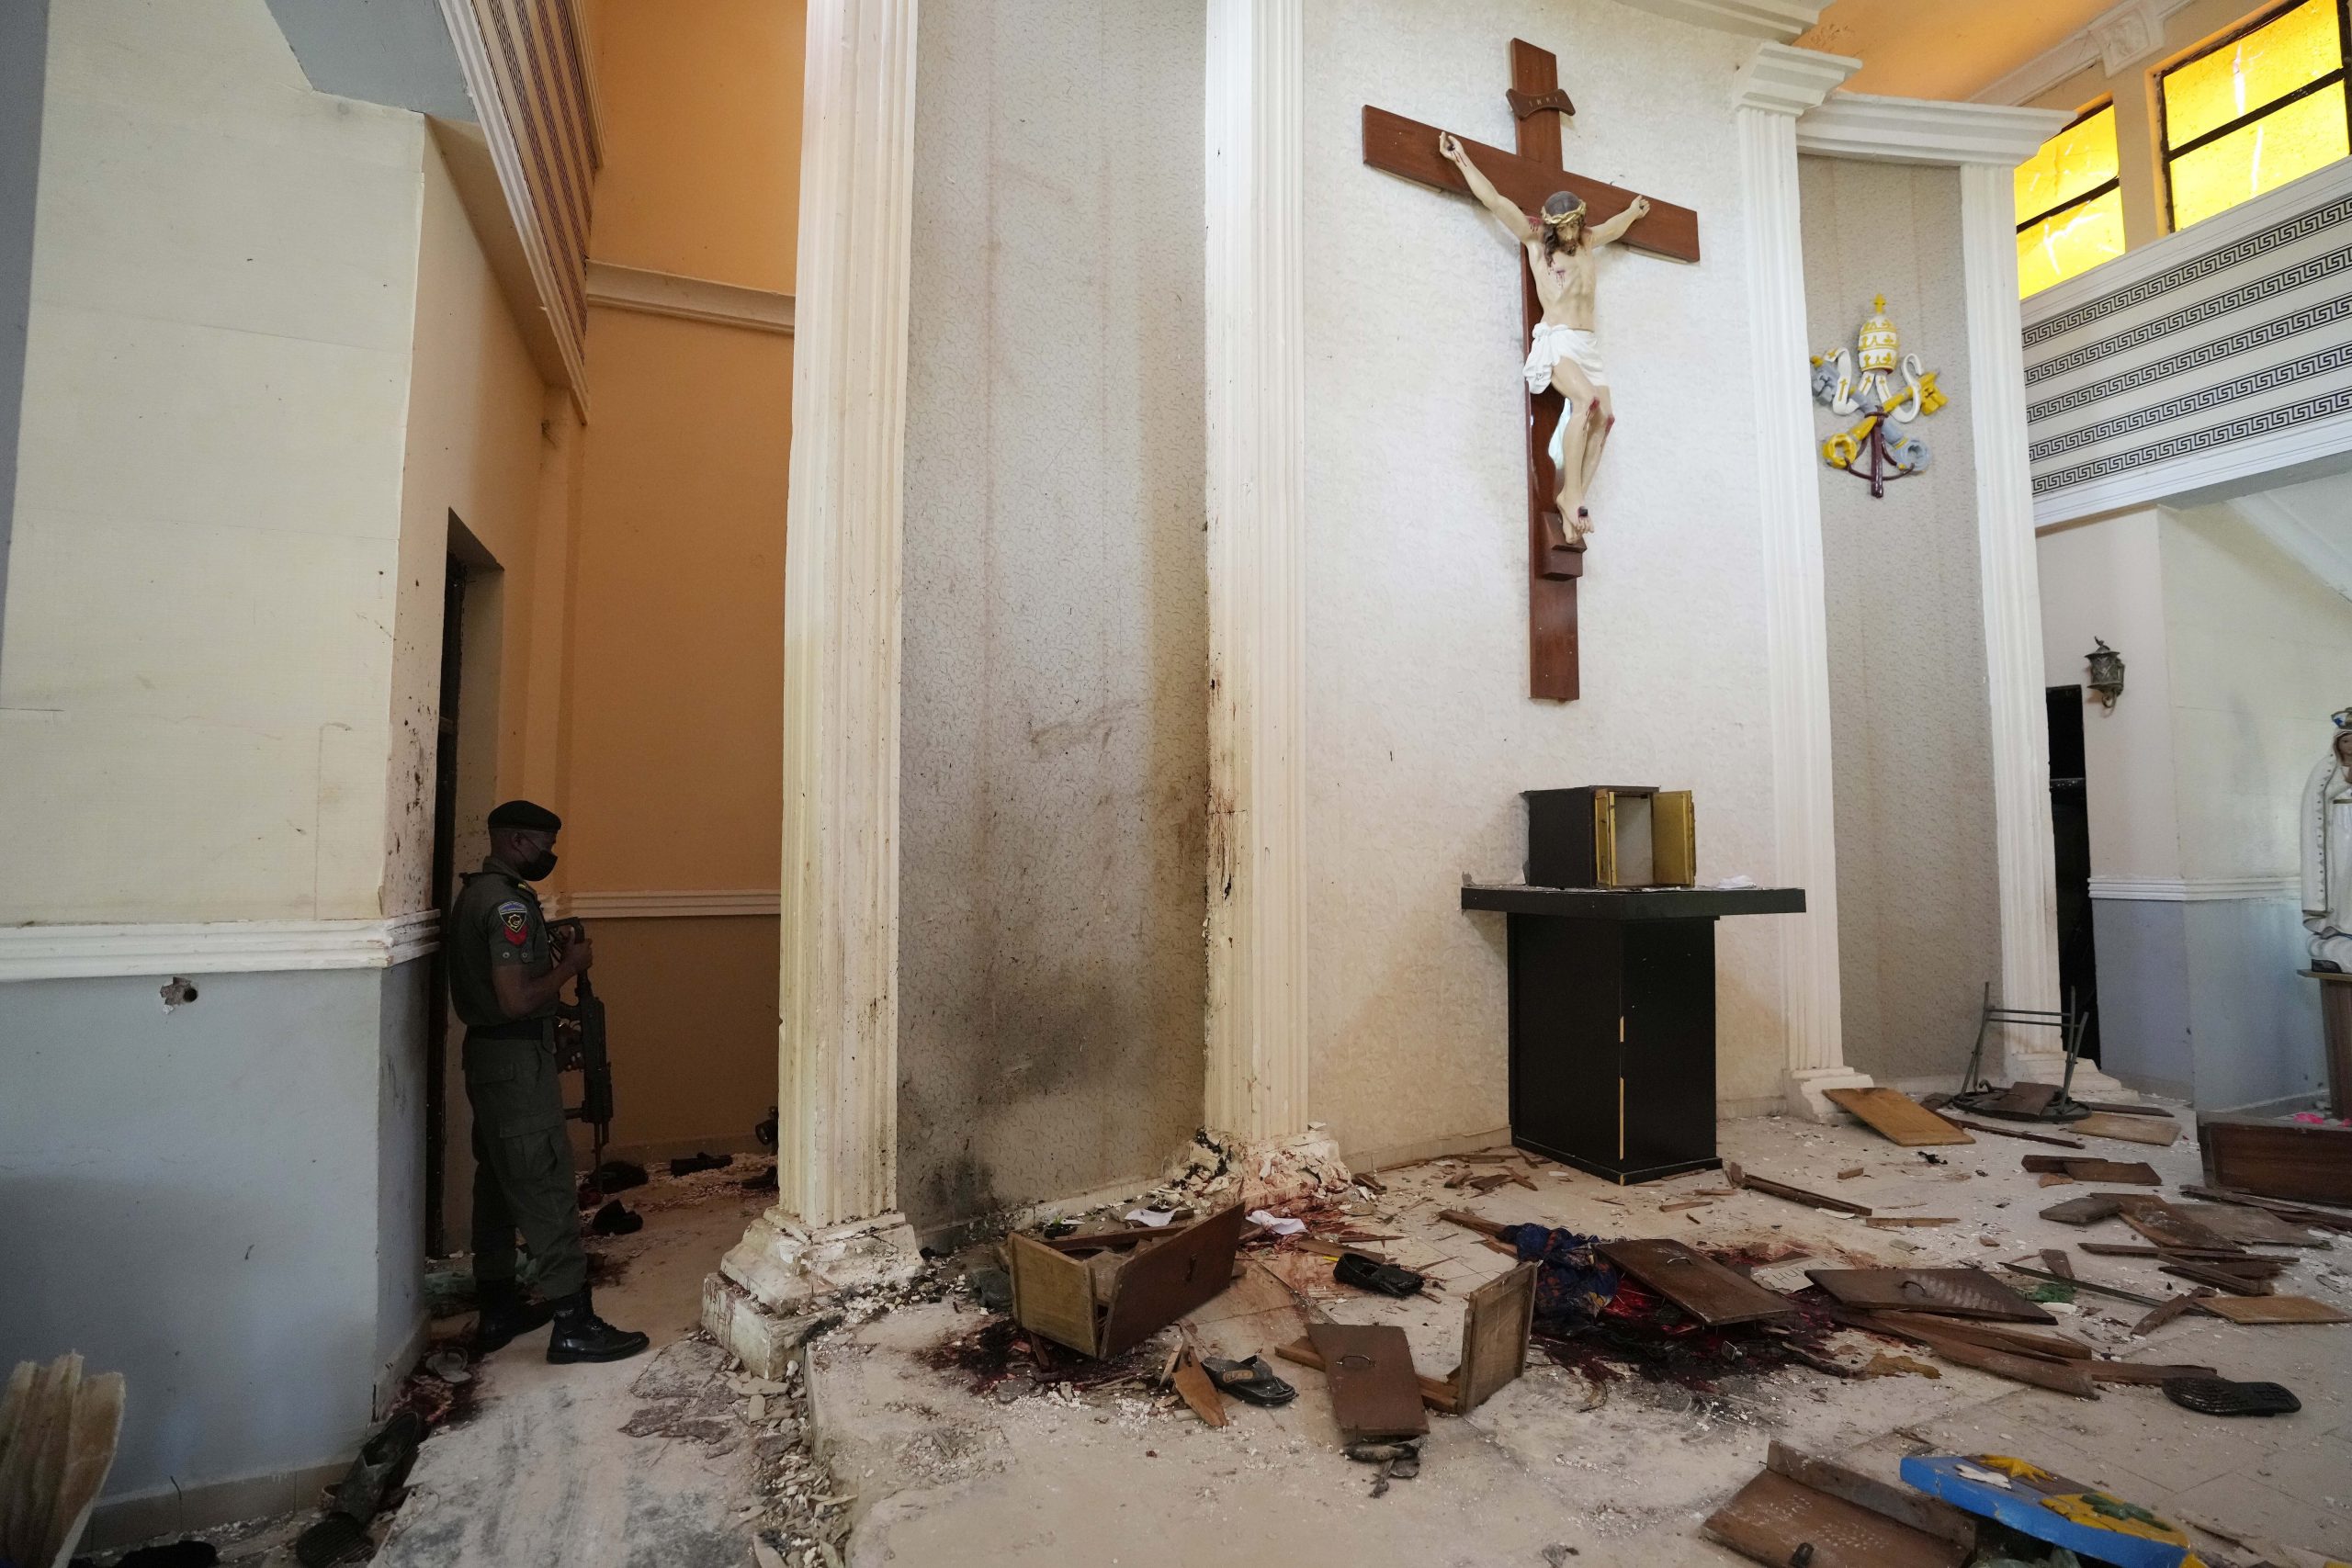 Massaker an Christen in Nigeria: Ungarn bietet 10 Mio. HUF Soforthilfe